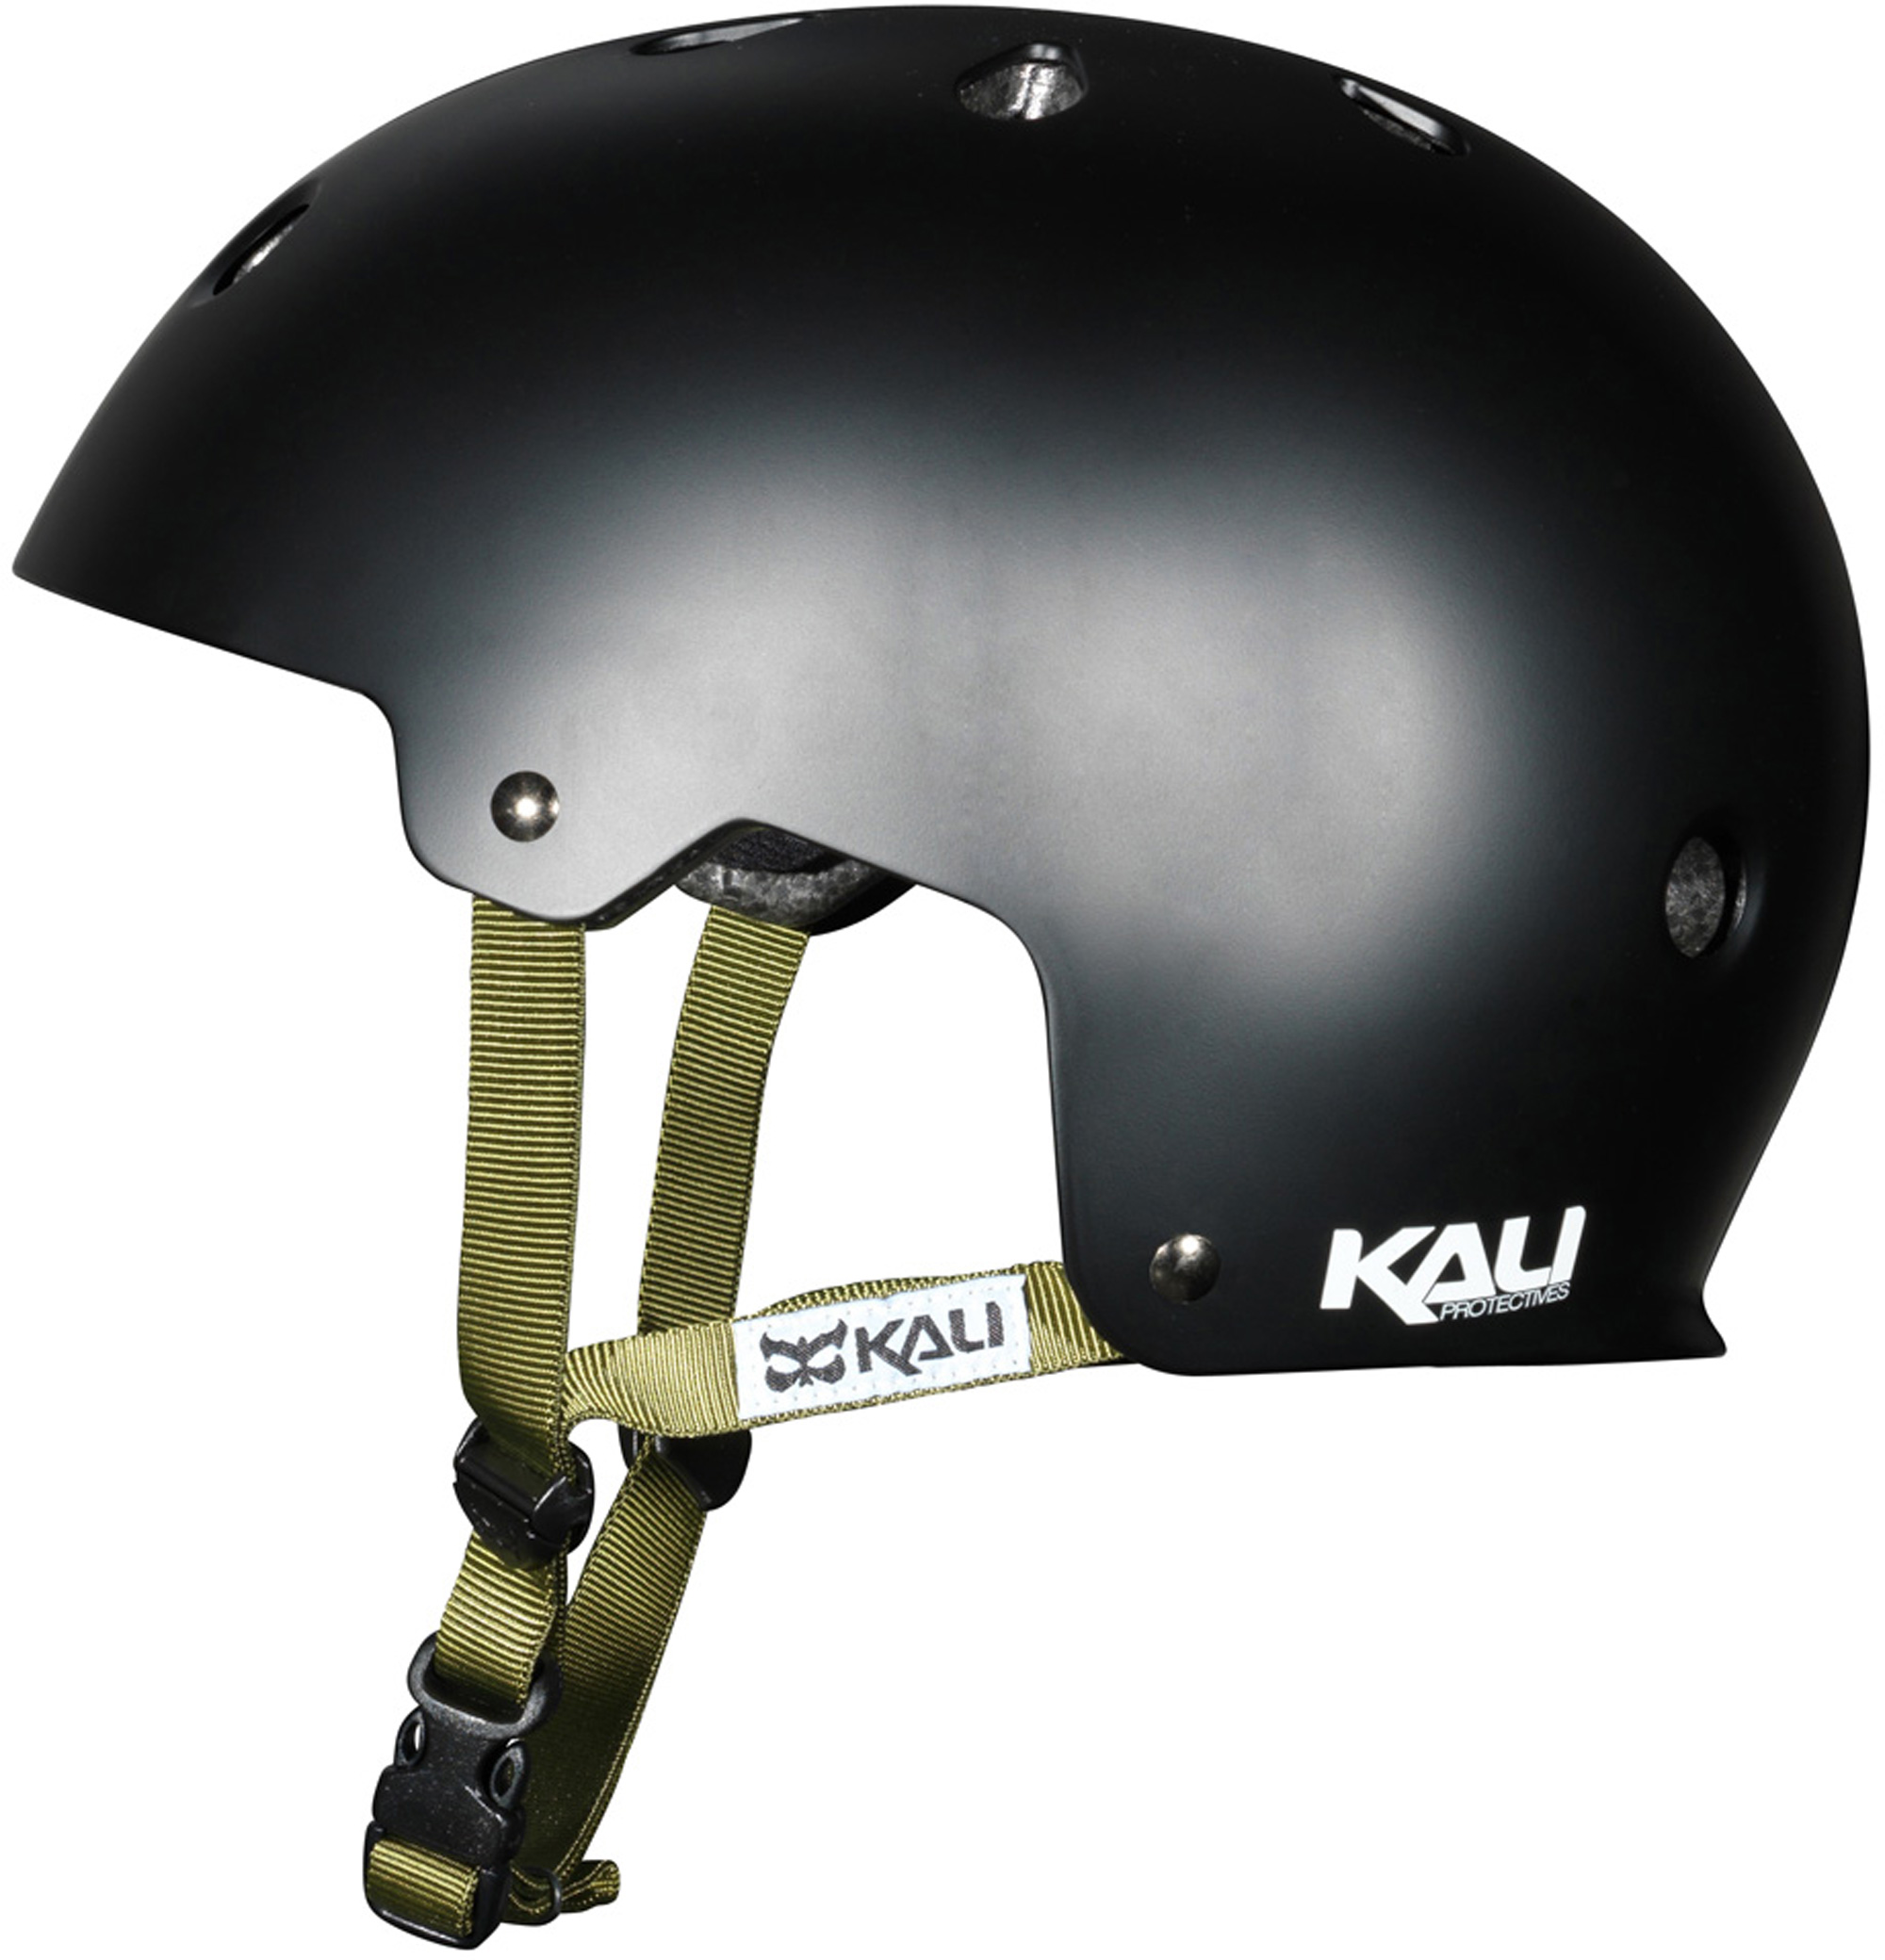 Details about   Casco Kali Maha Solid WHITE KAL191502 Helmets Men’s BMX Dirt 